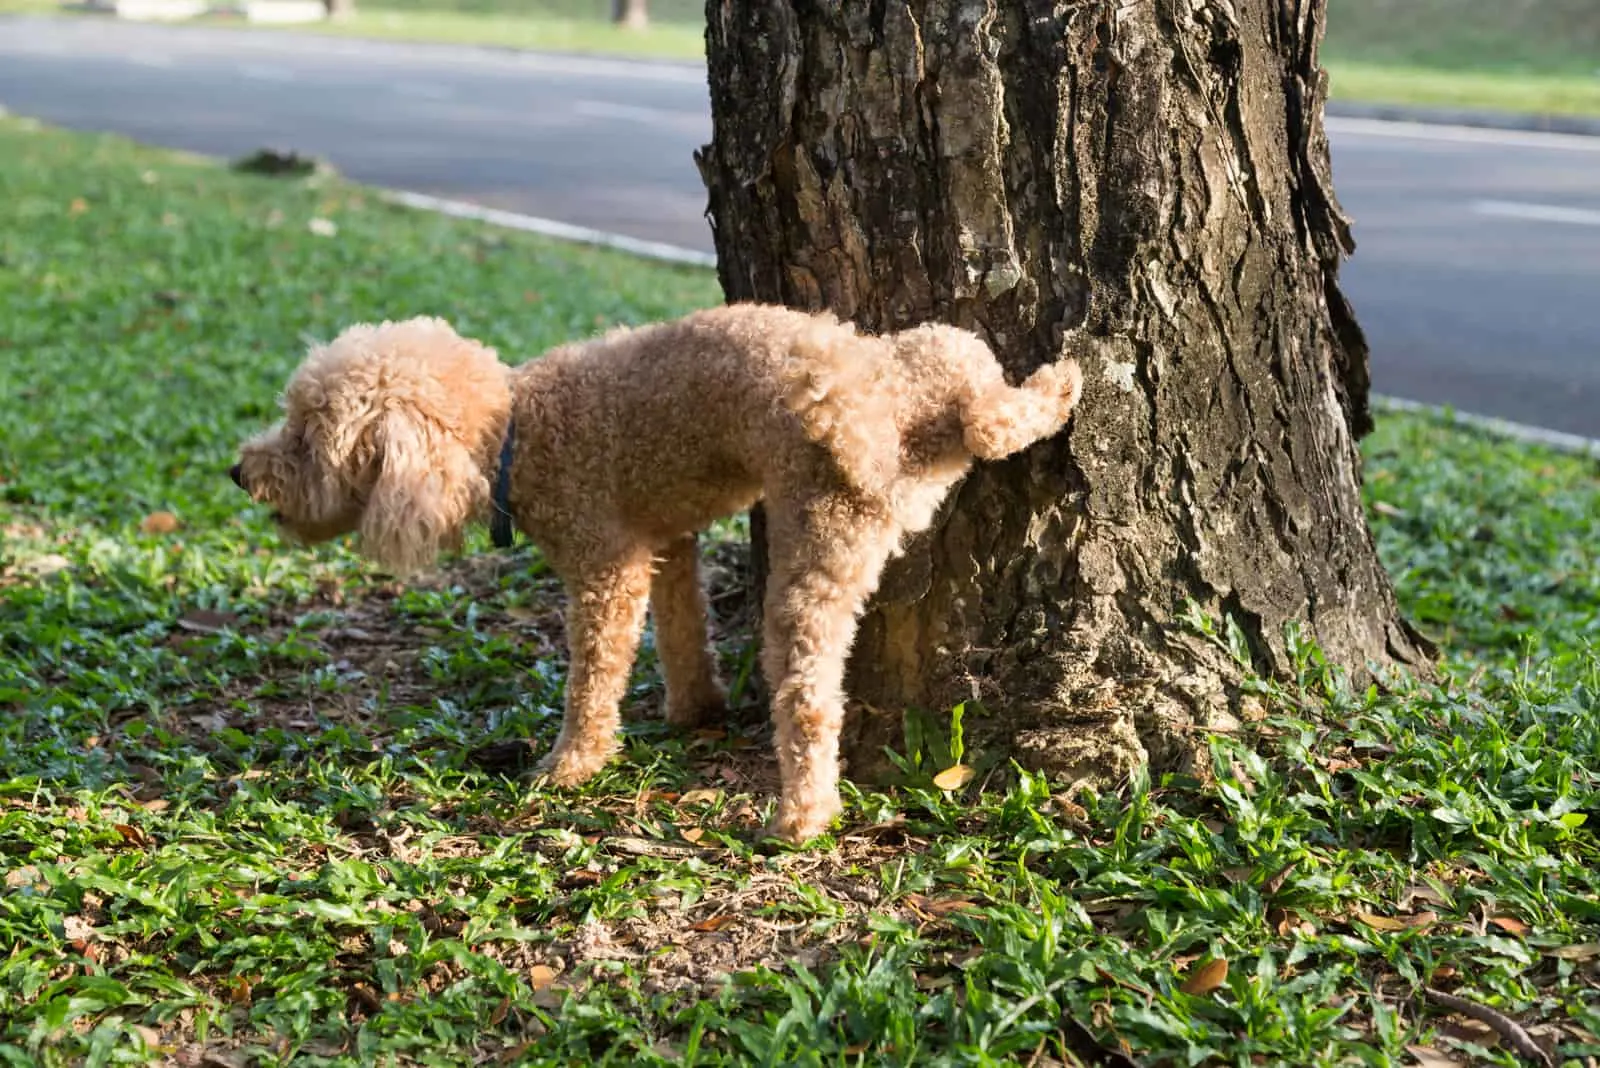 Male poodle urinating pee on tree